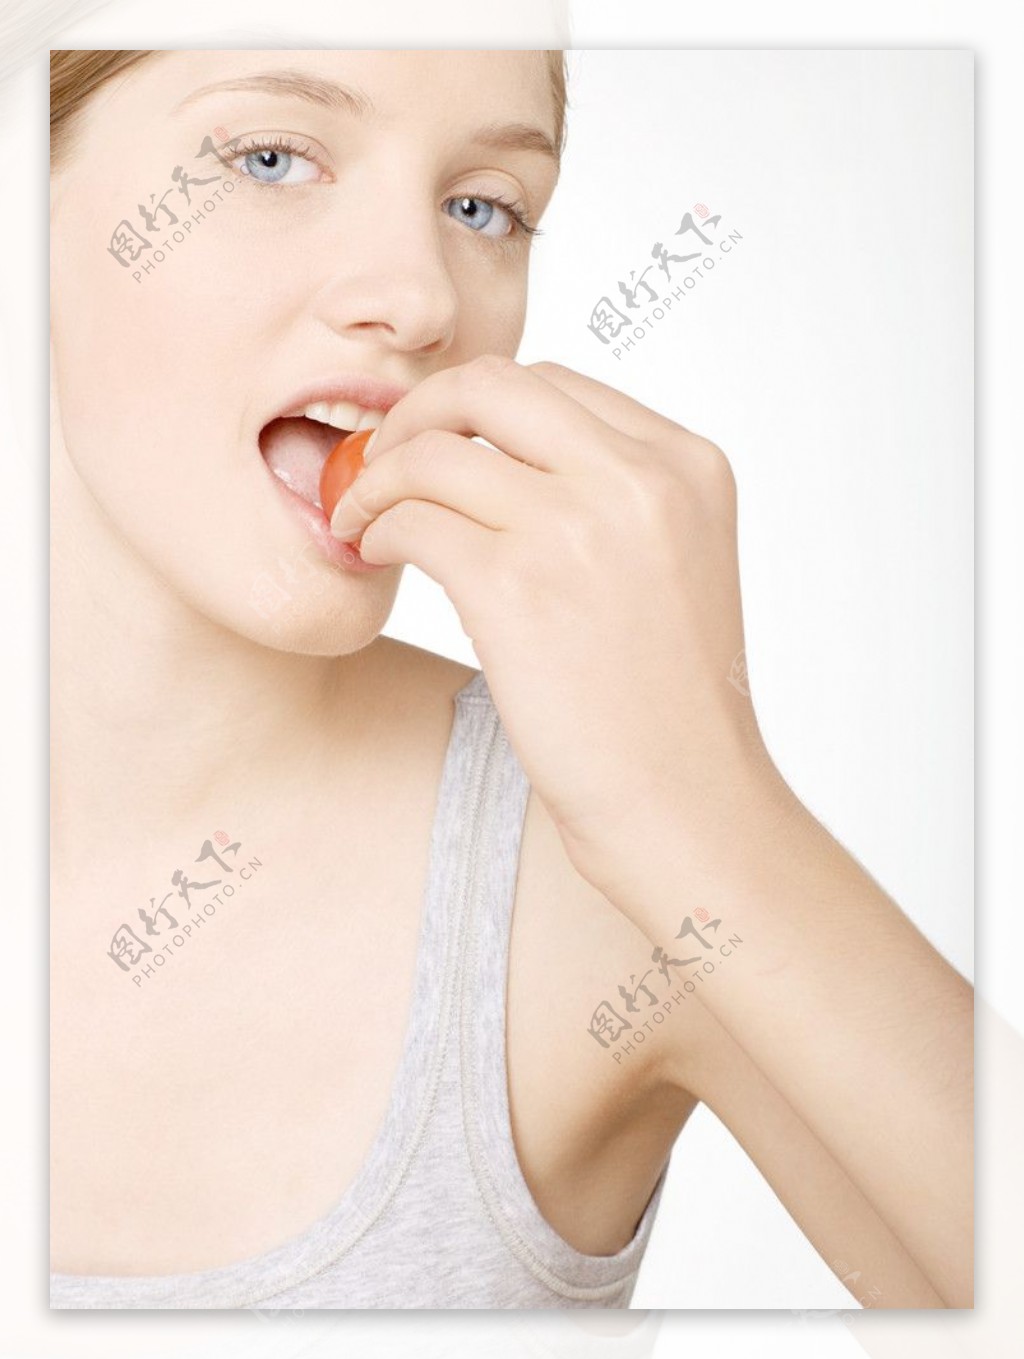 吃西红柿的女人图片